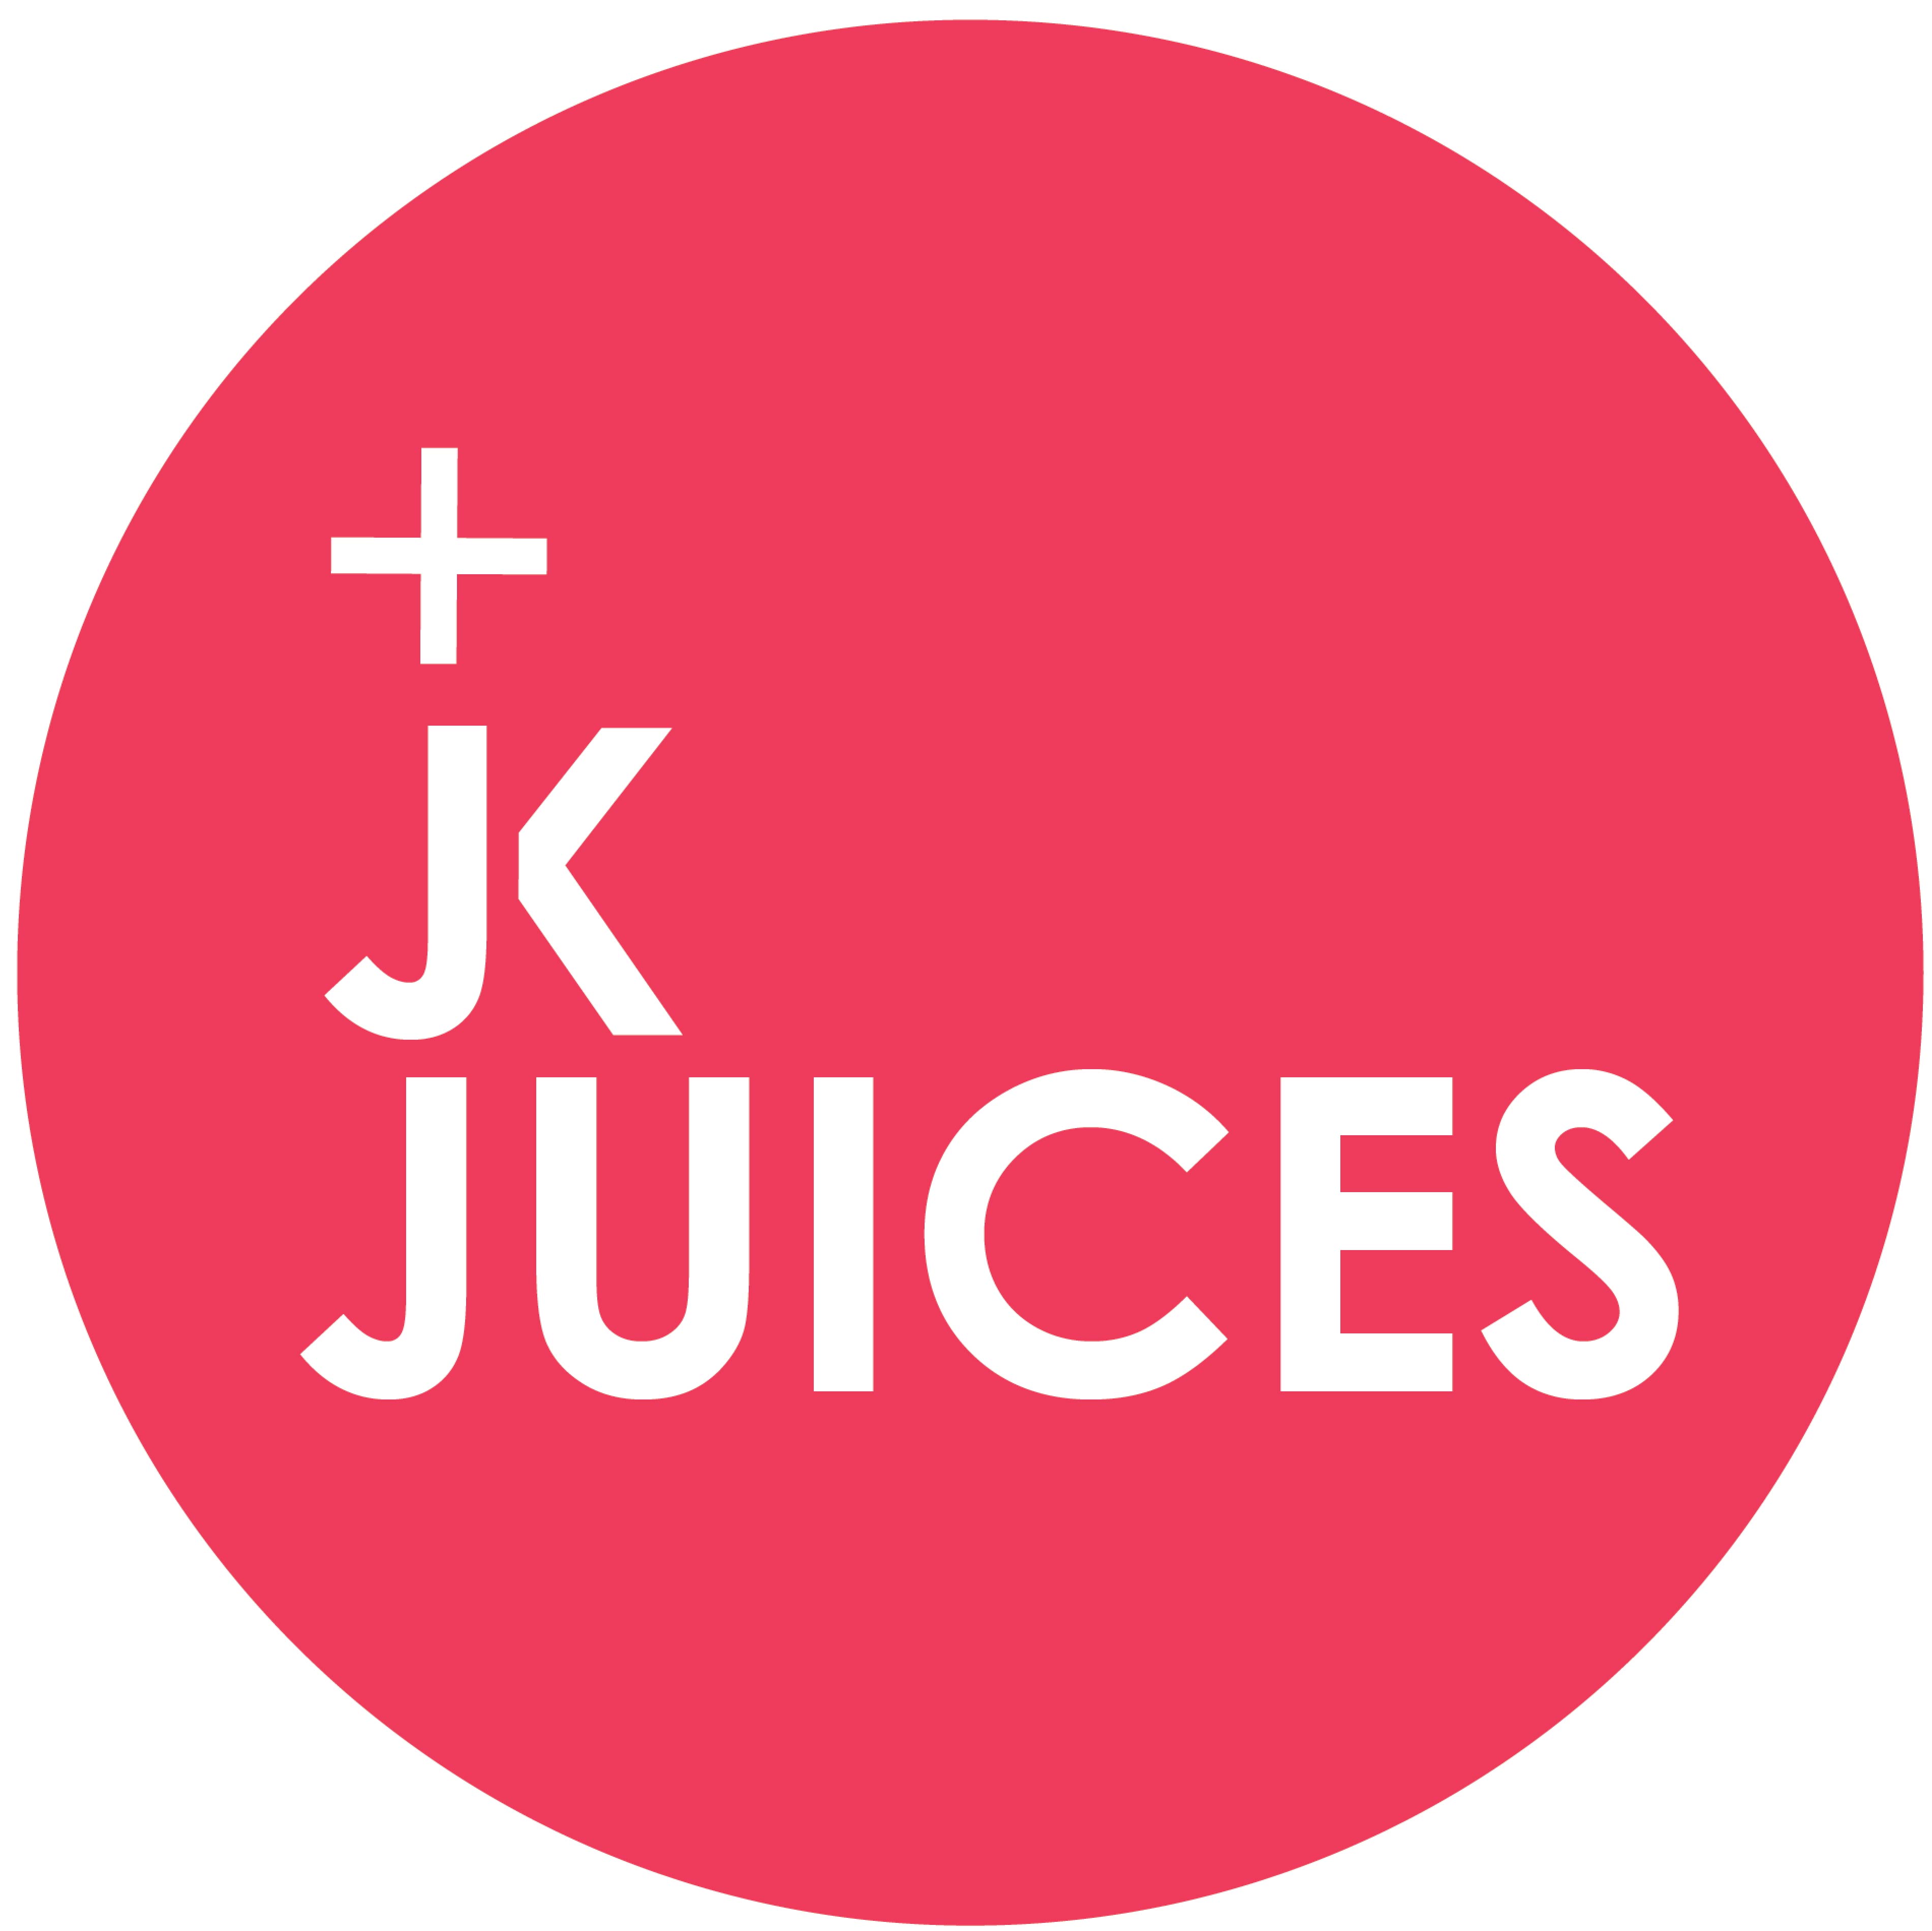 JK Juices